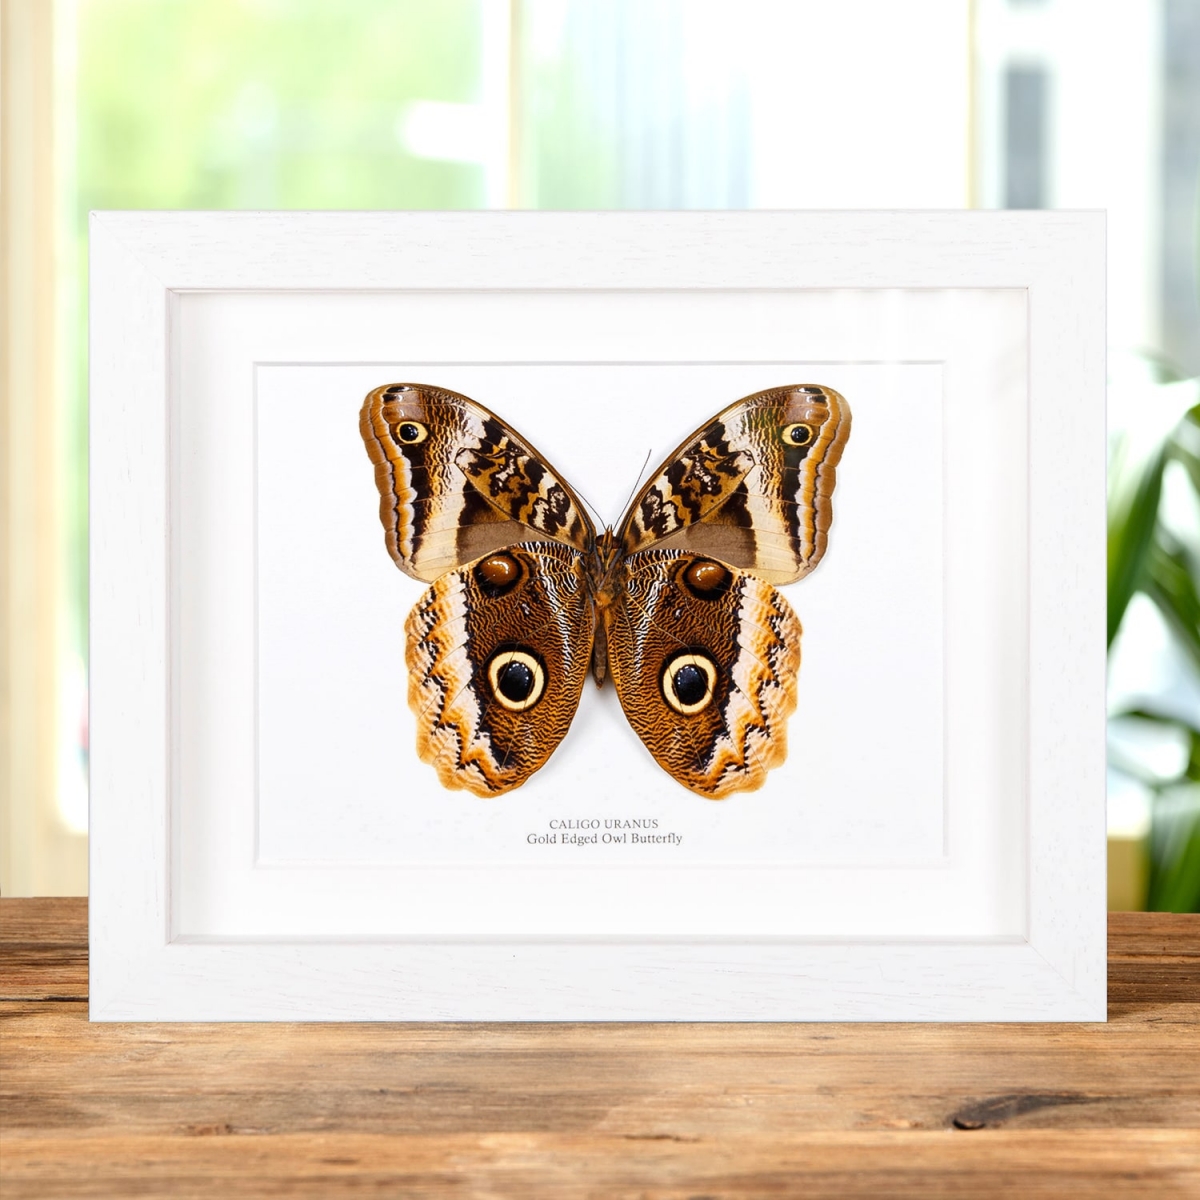 Gold Edged Owl Butterfly Ventral Side in Box Frame (Caligo uranus)